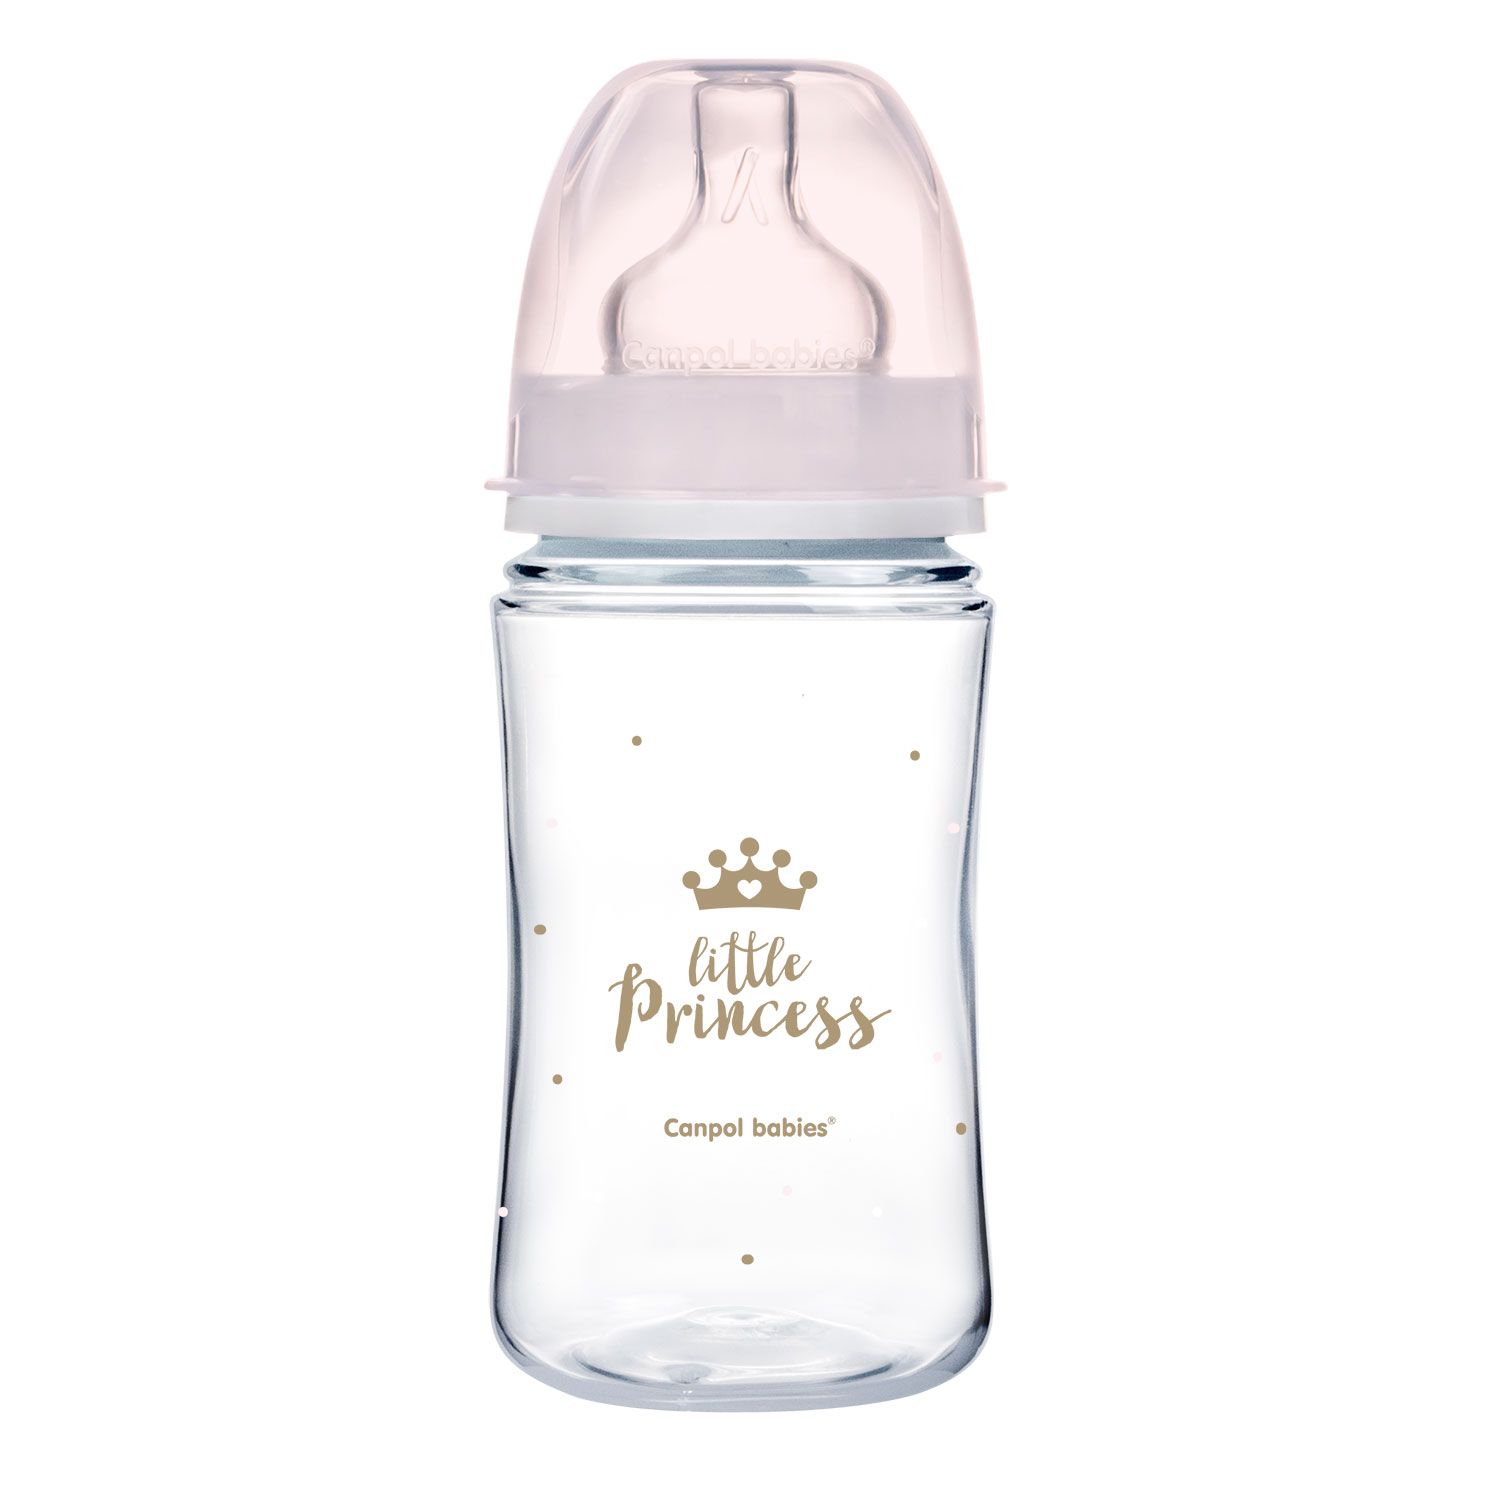 Антиколиковая бутылочка Canpol Babies Easystart Royal baby, с широким отверствием, 240 мл, розовый (35/234_pin) - фото 1